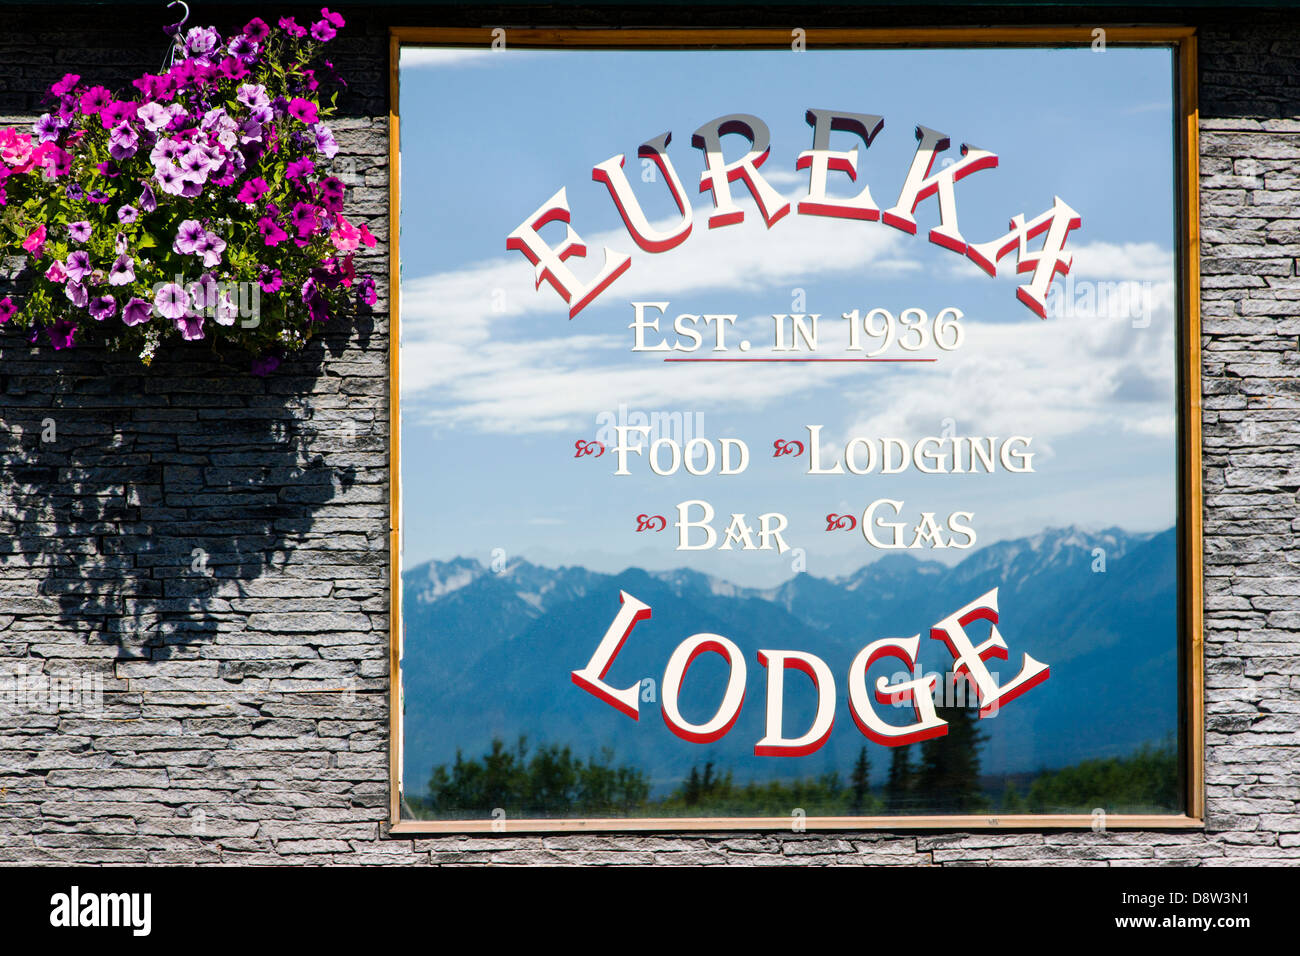 Propriété de la famille Eureka roadhouse, Lodge et restaurant. Accueil des 25 100 Café. Banque D'Images